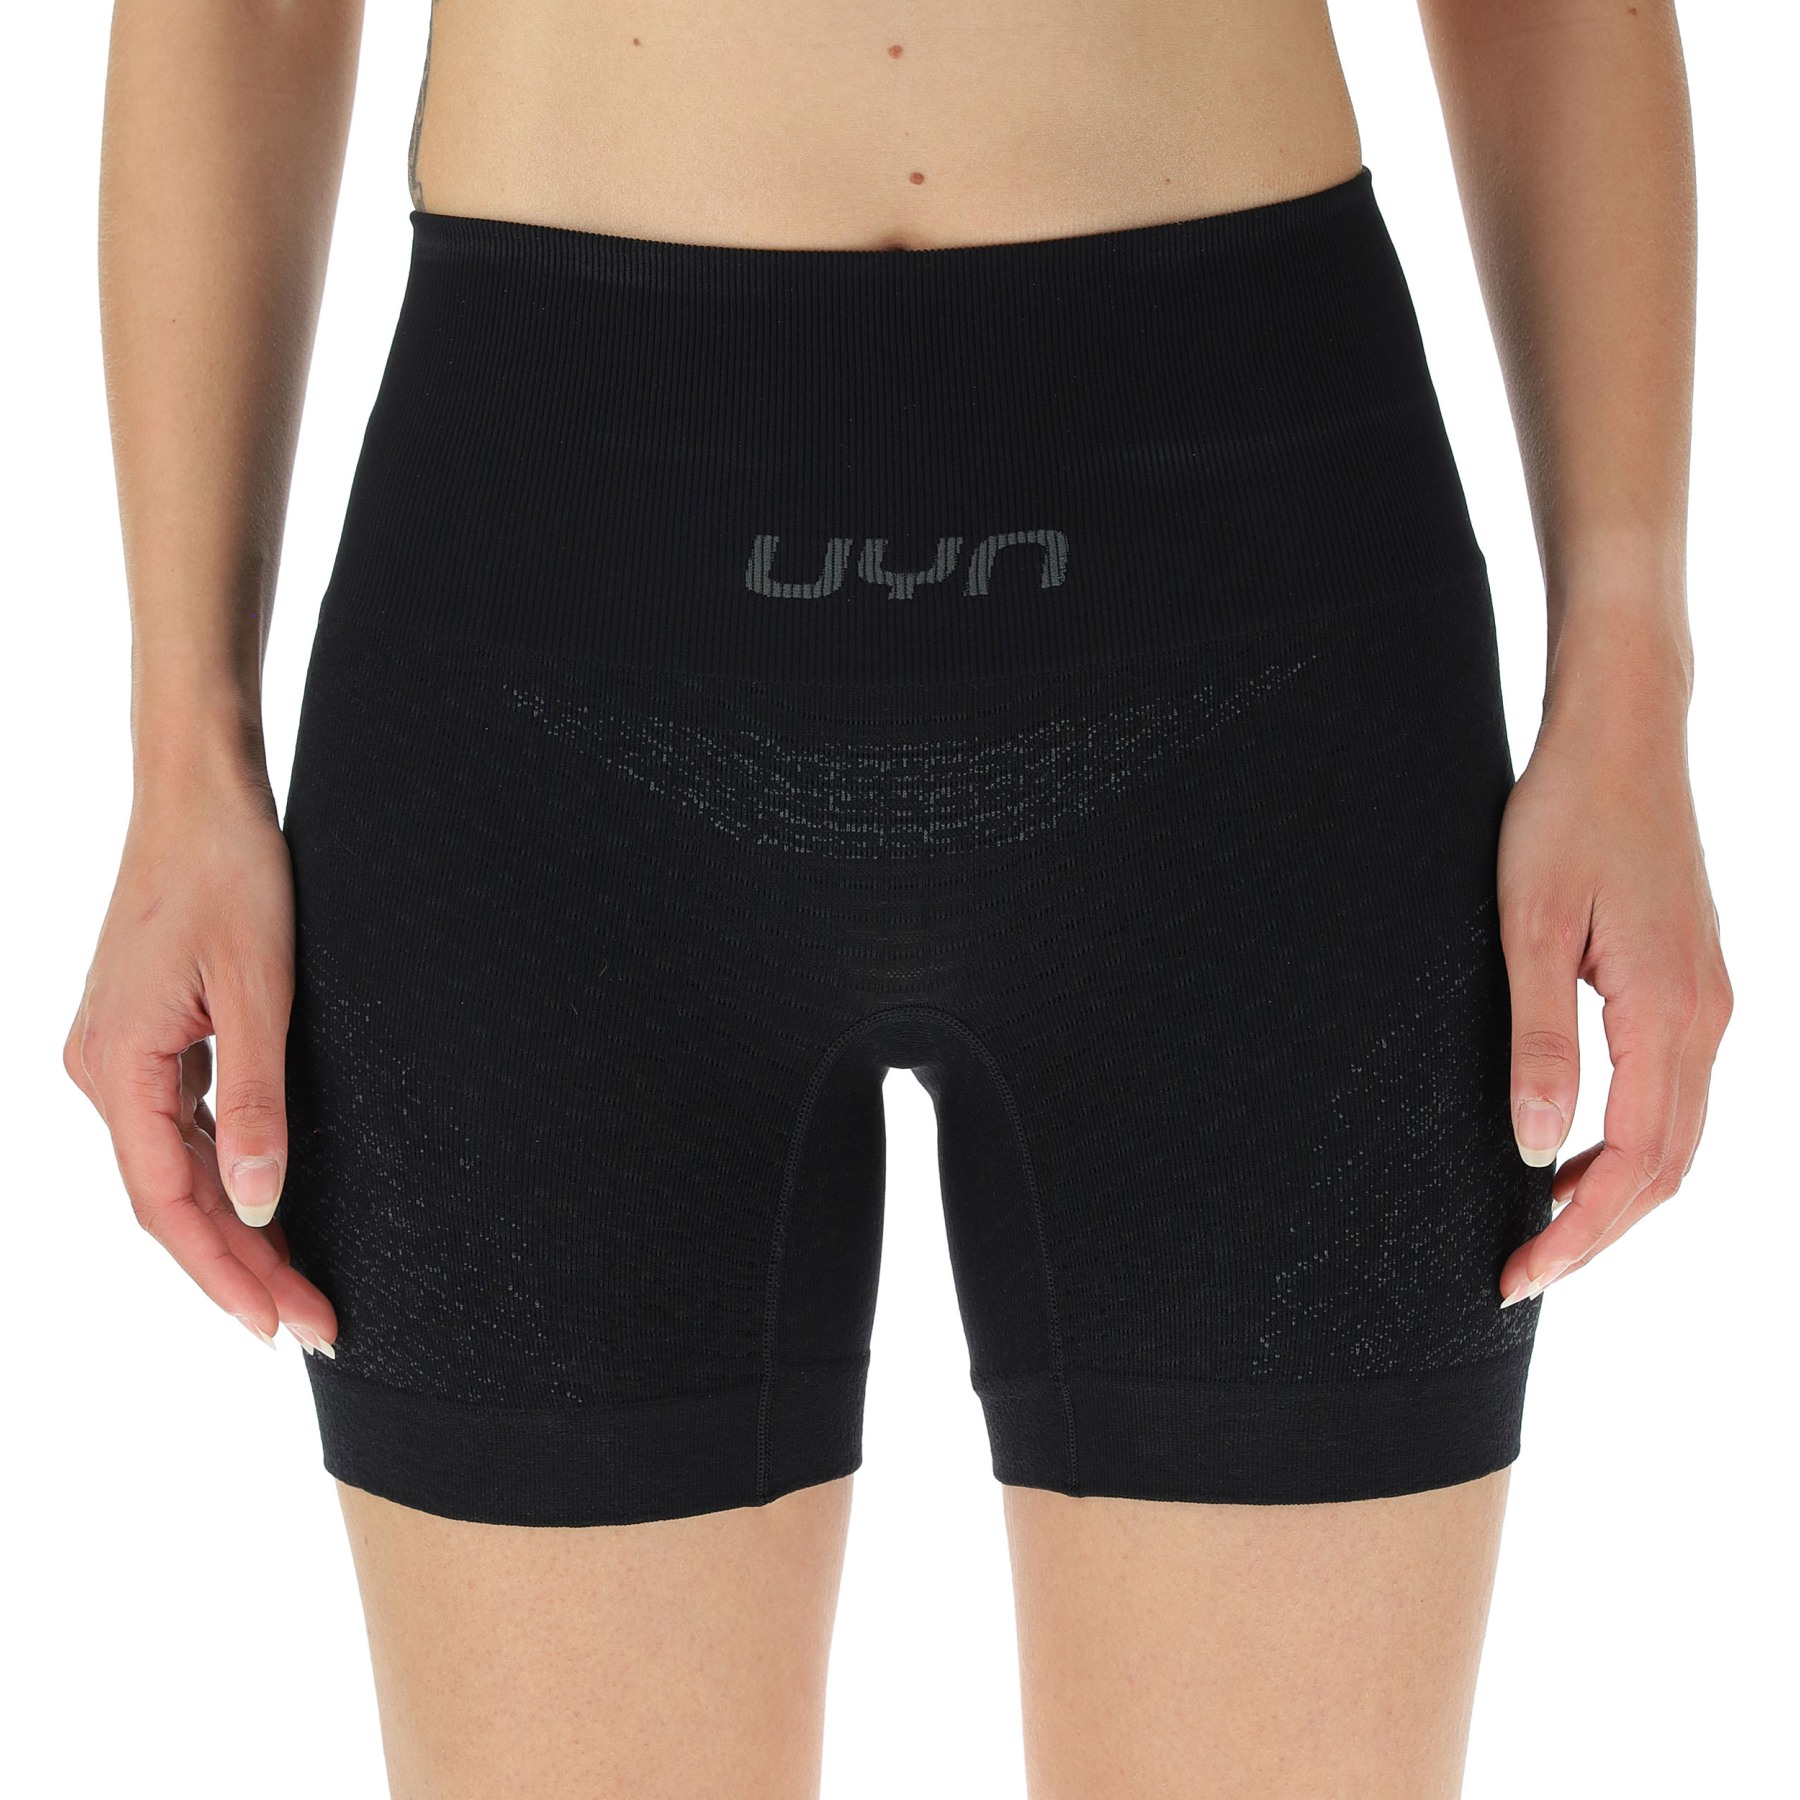 Produktbild von UYN Running Exceleration Tight Shorts Damen - Black/Black/Iron